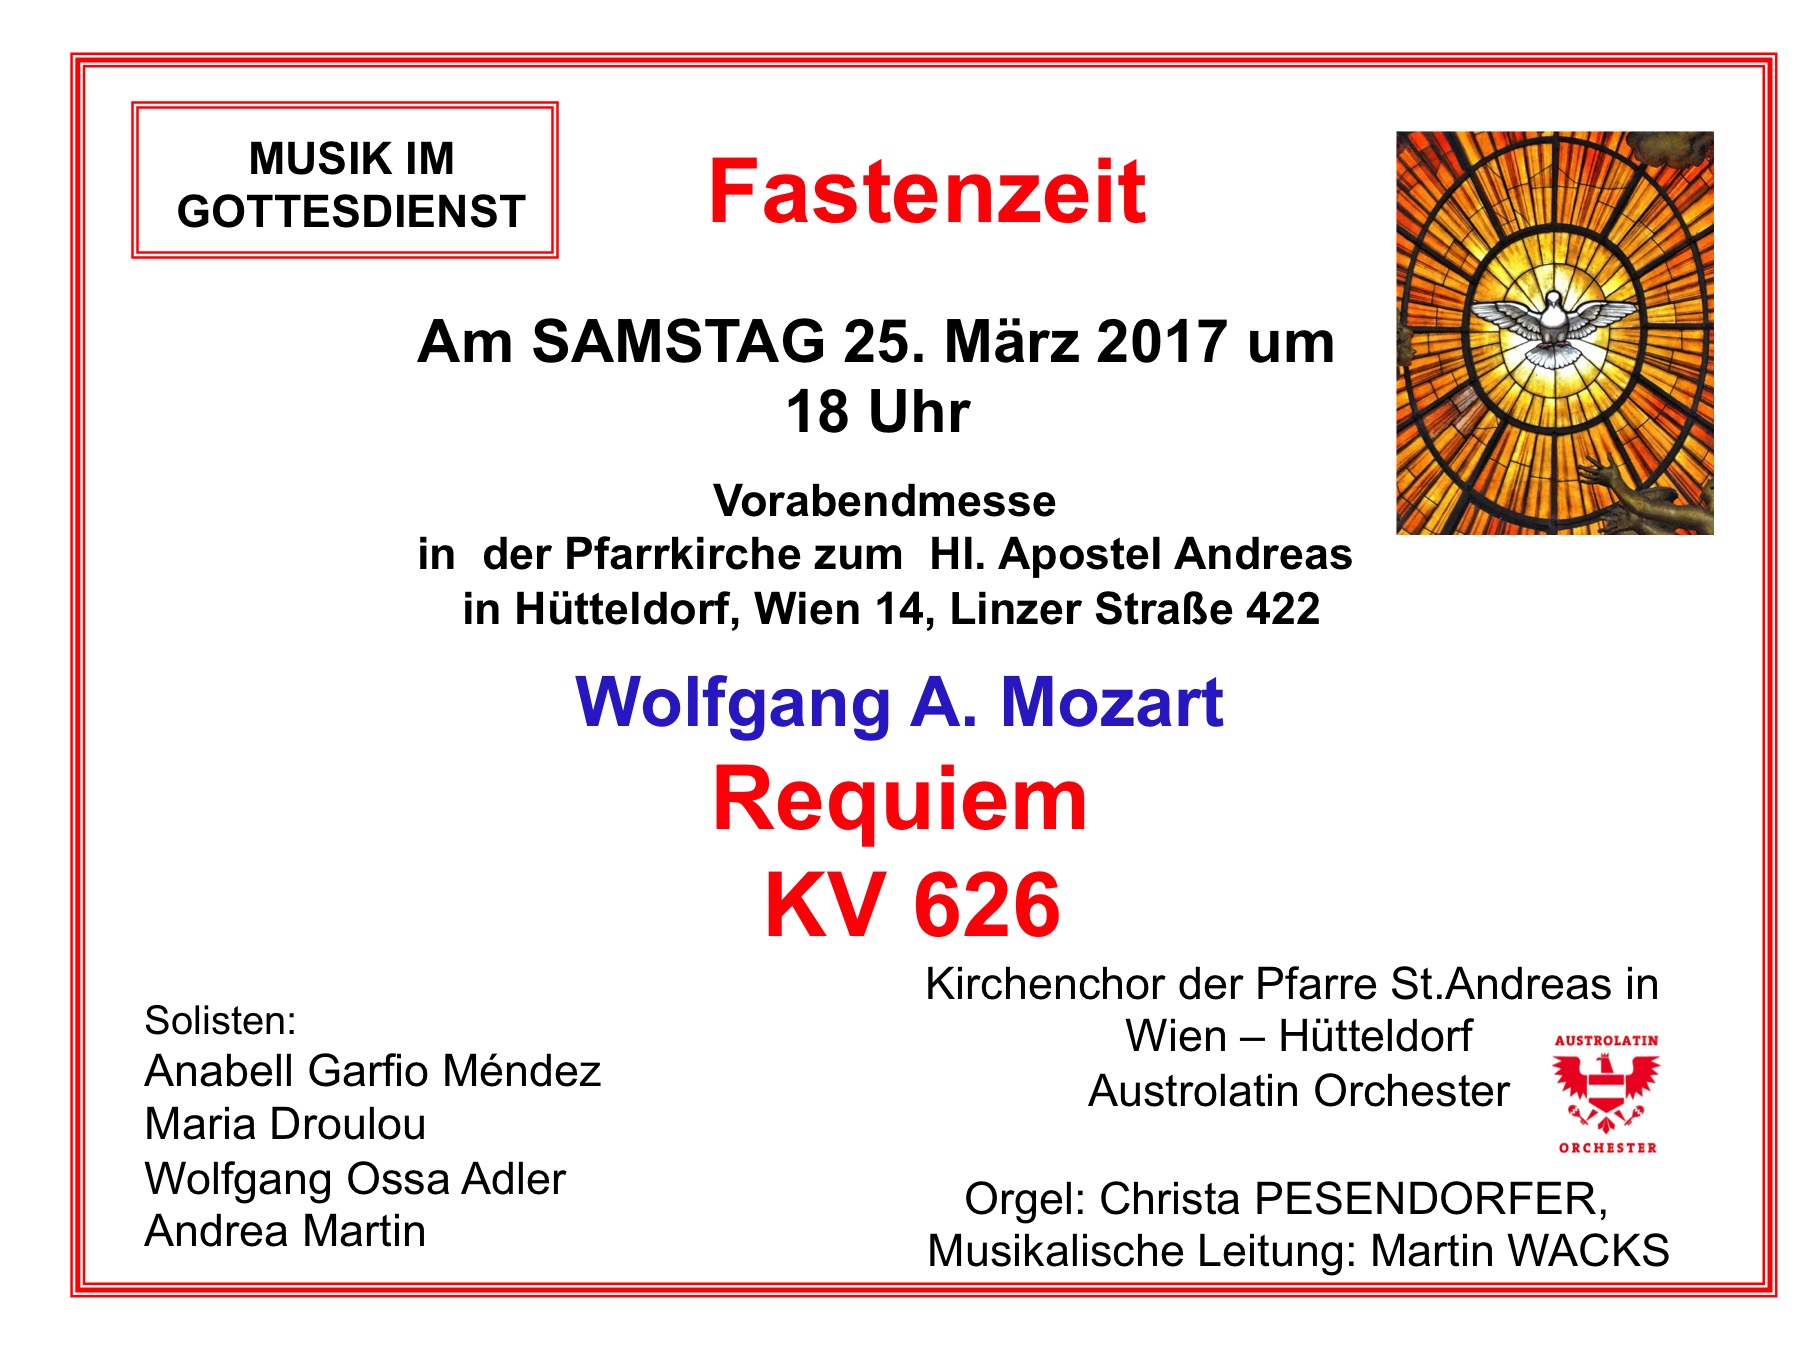 Mozart Requiem in der Fastenzeit